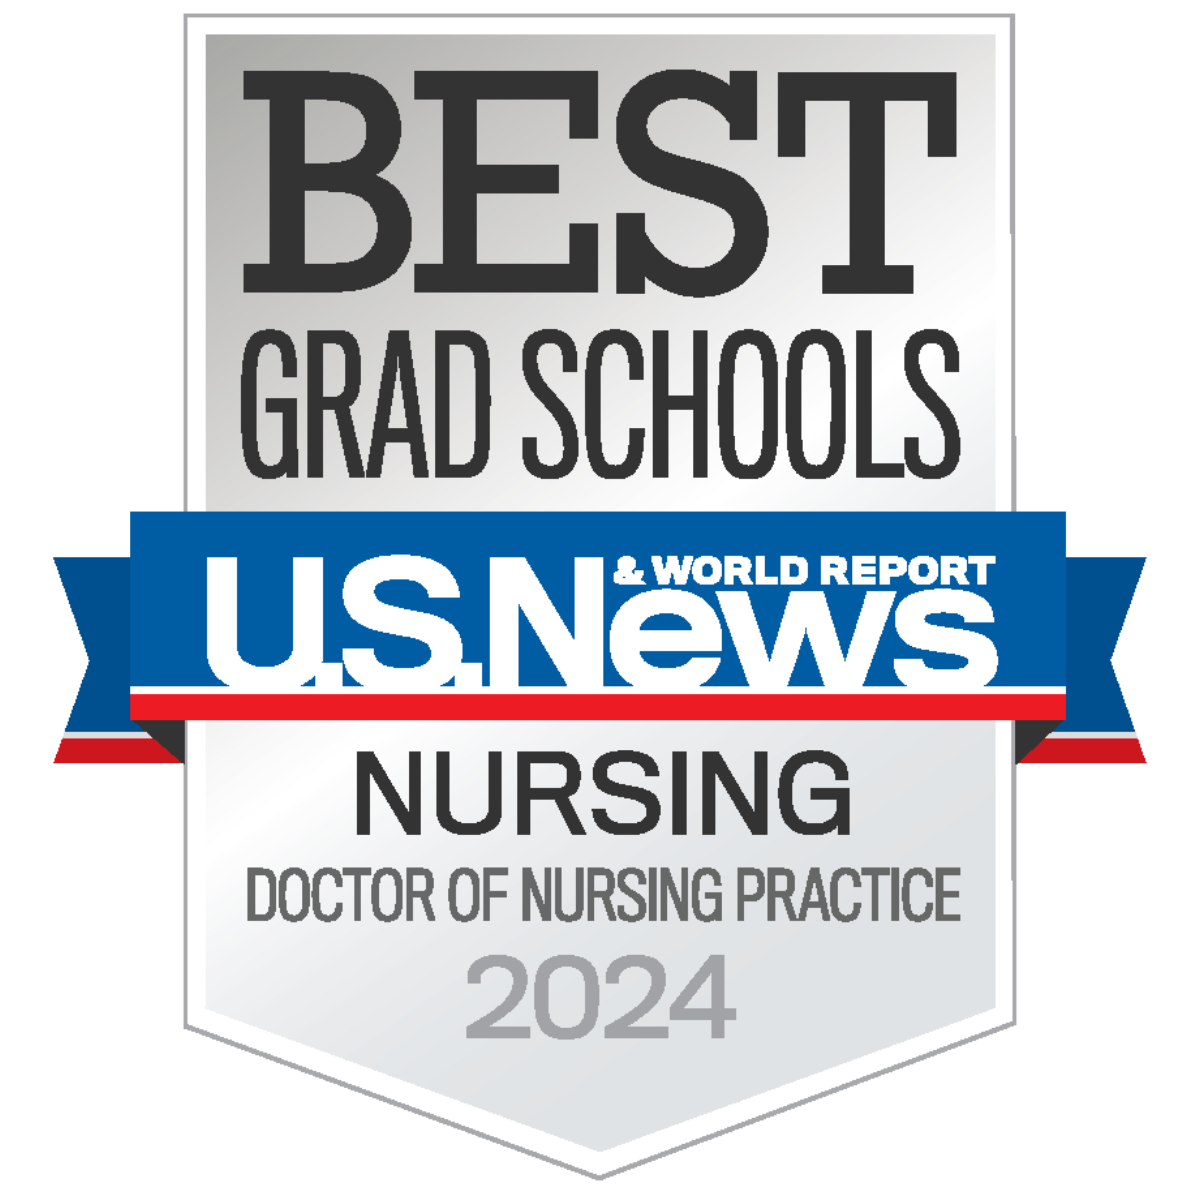 U.S. News Best Grad Schools badge for doctor of nursing practice program 2023 - 2024